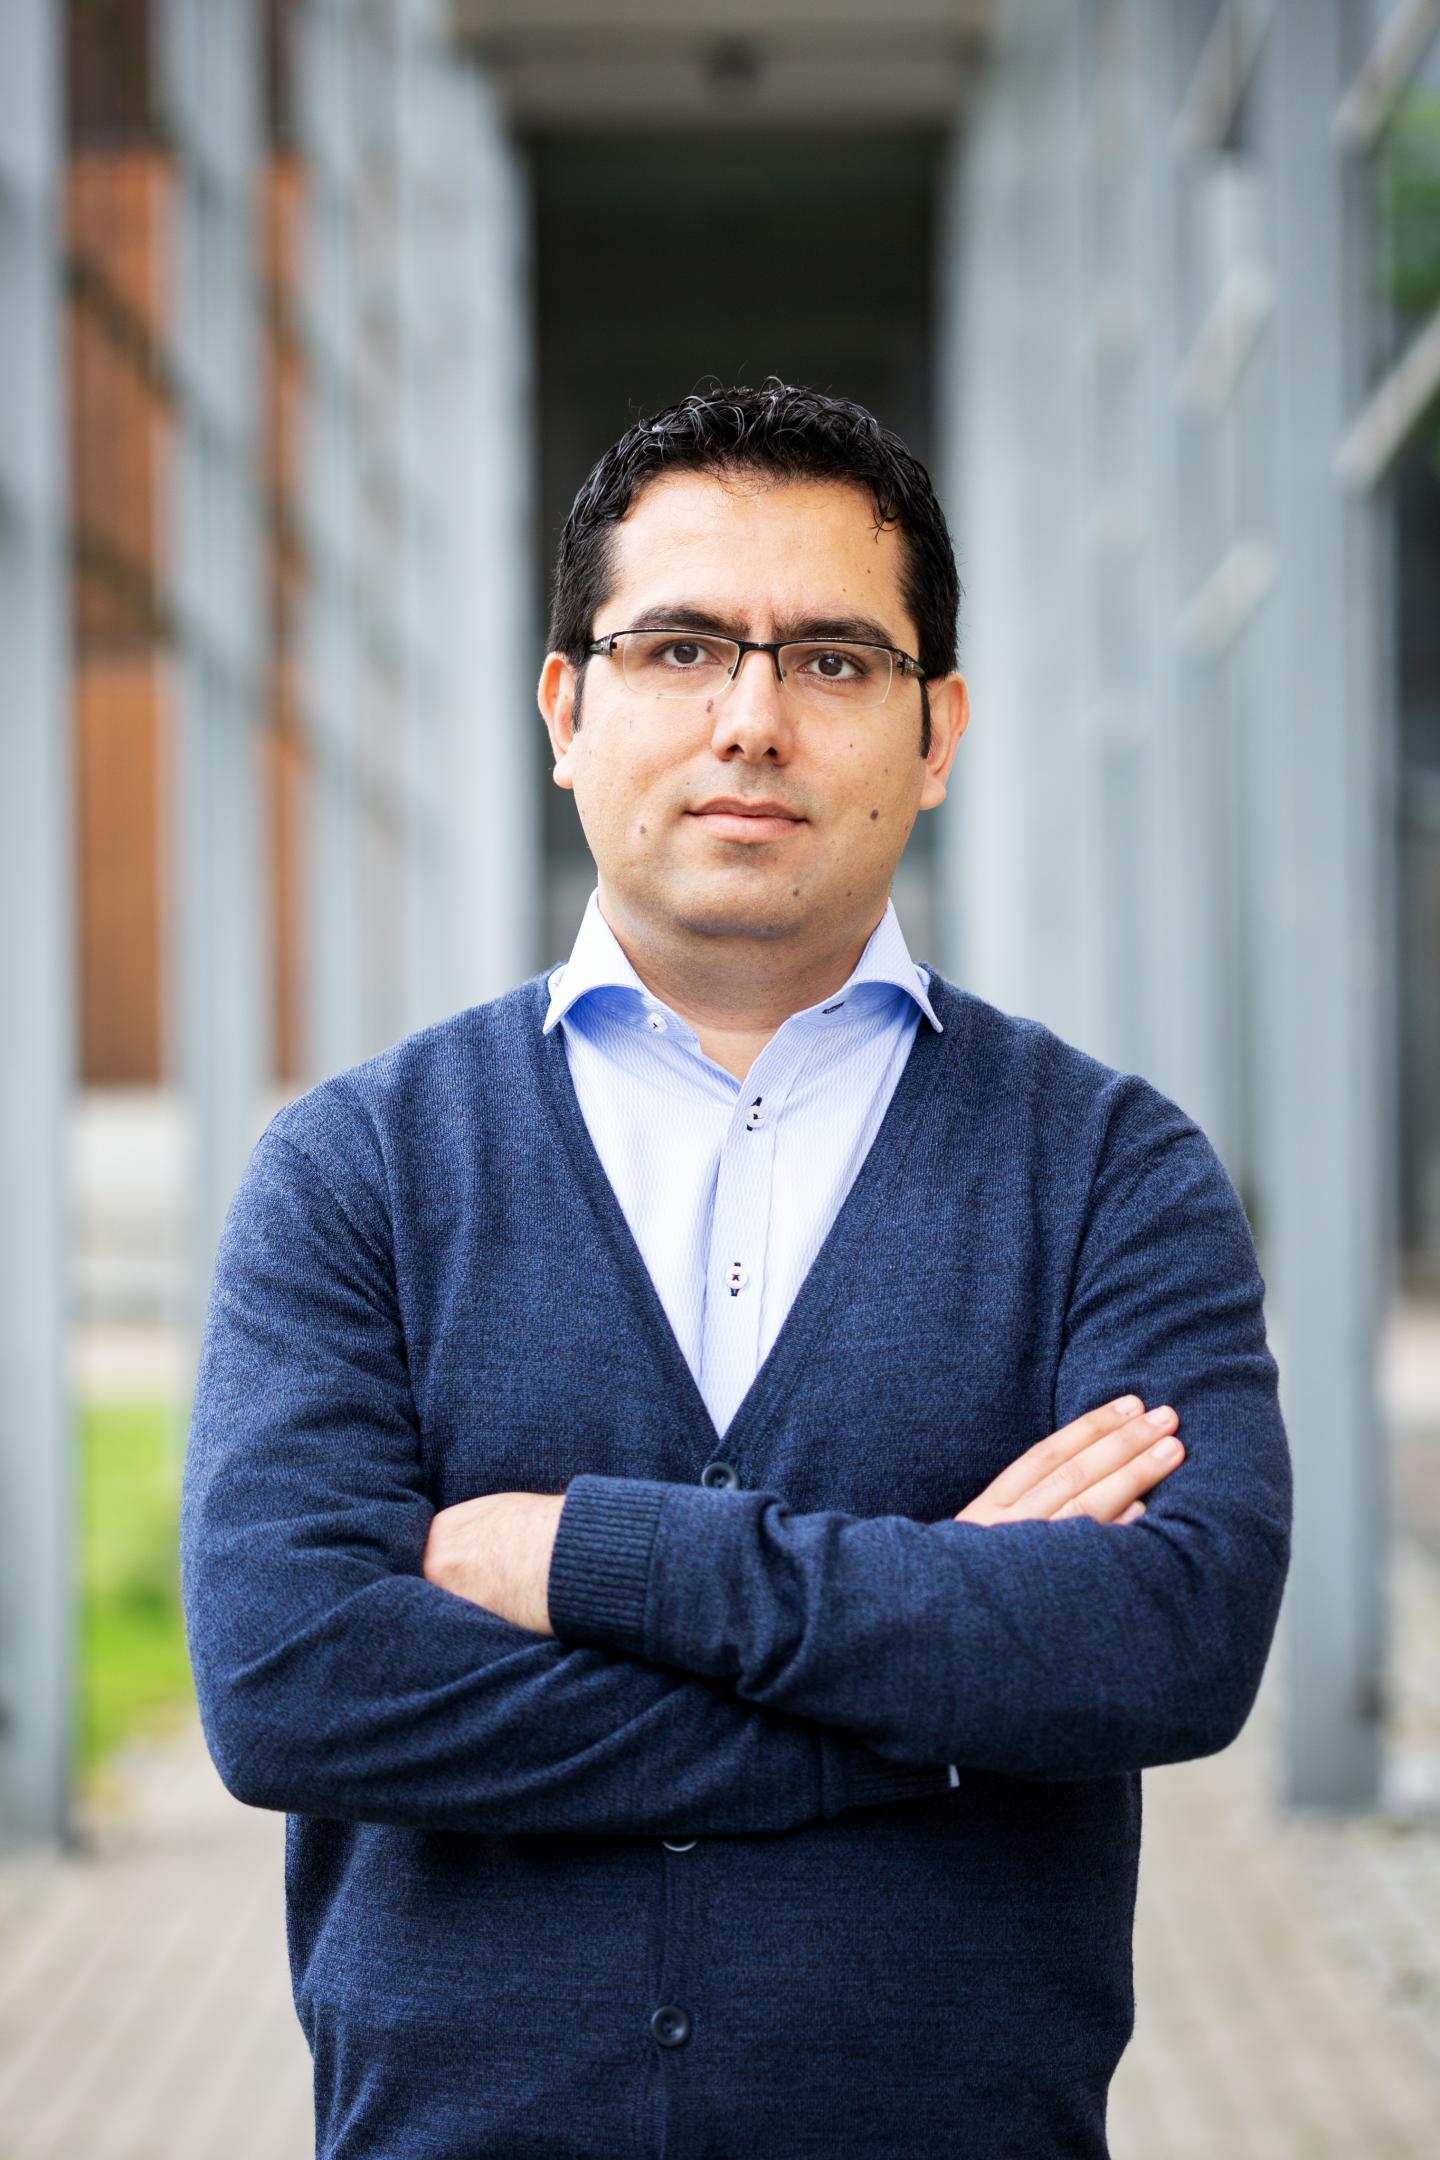 Assistant Professor Mahdi Abkar